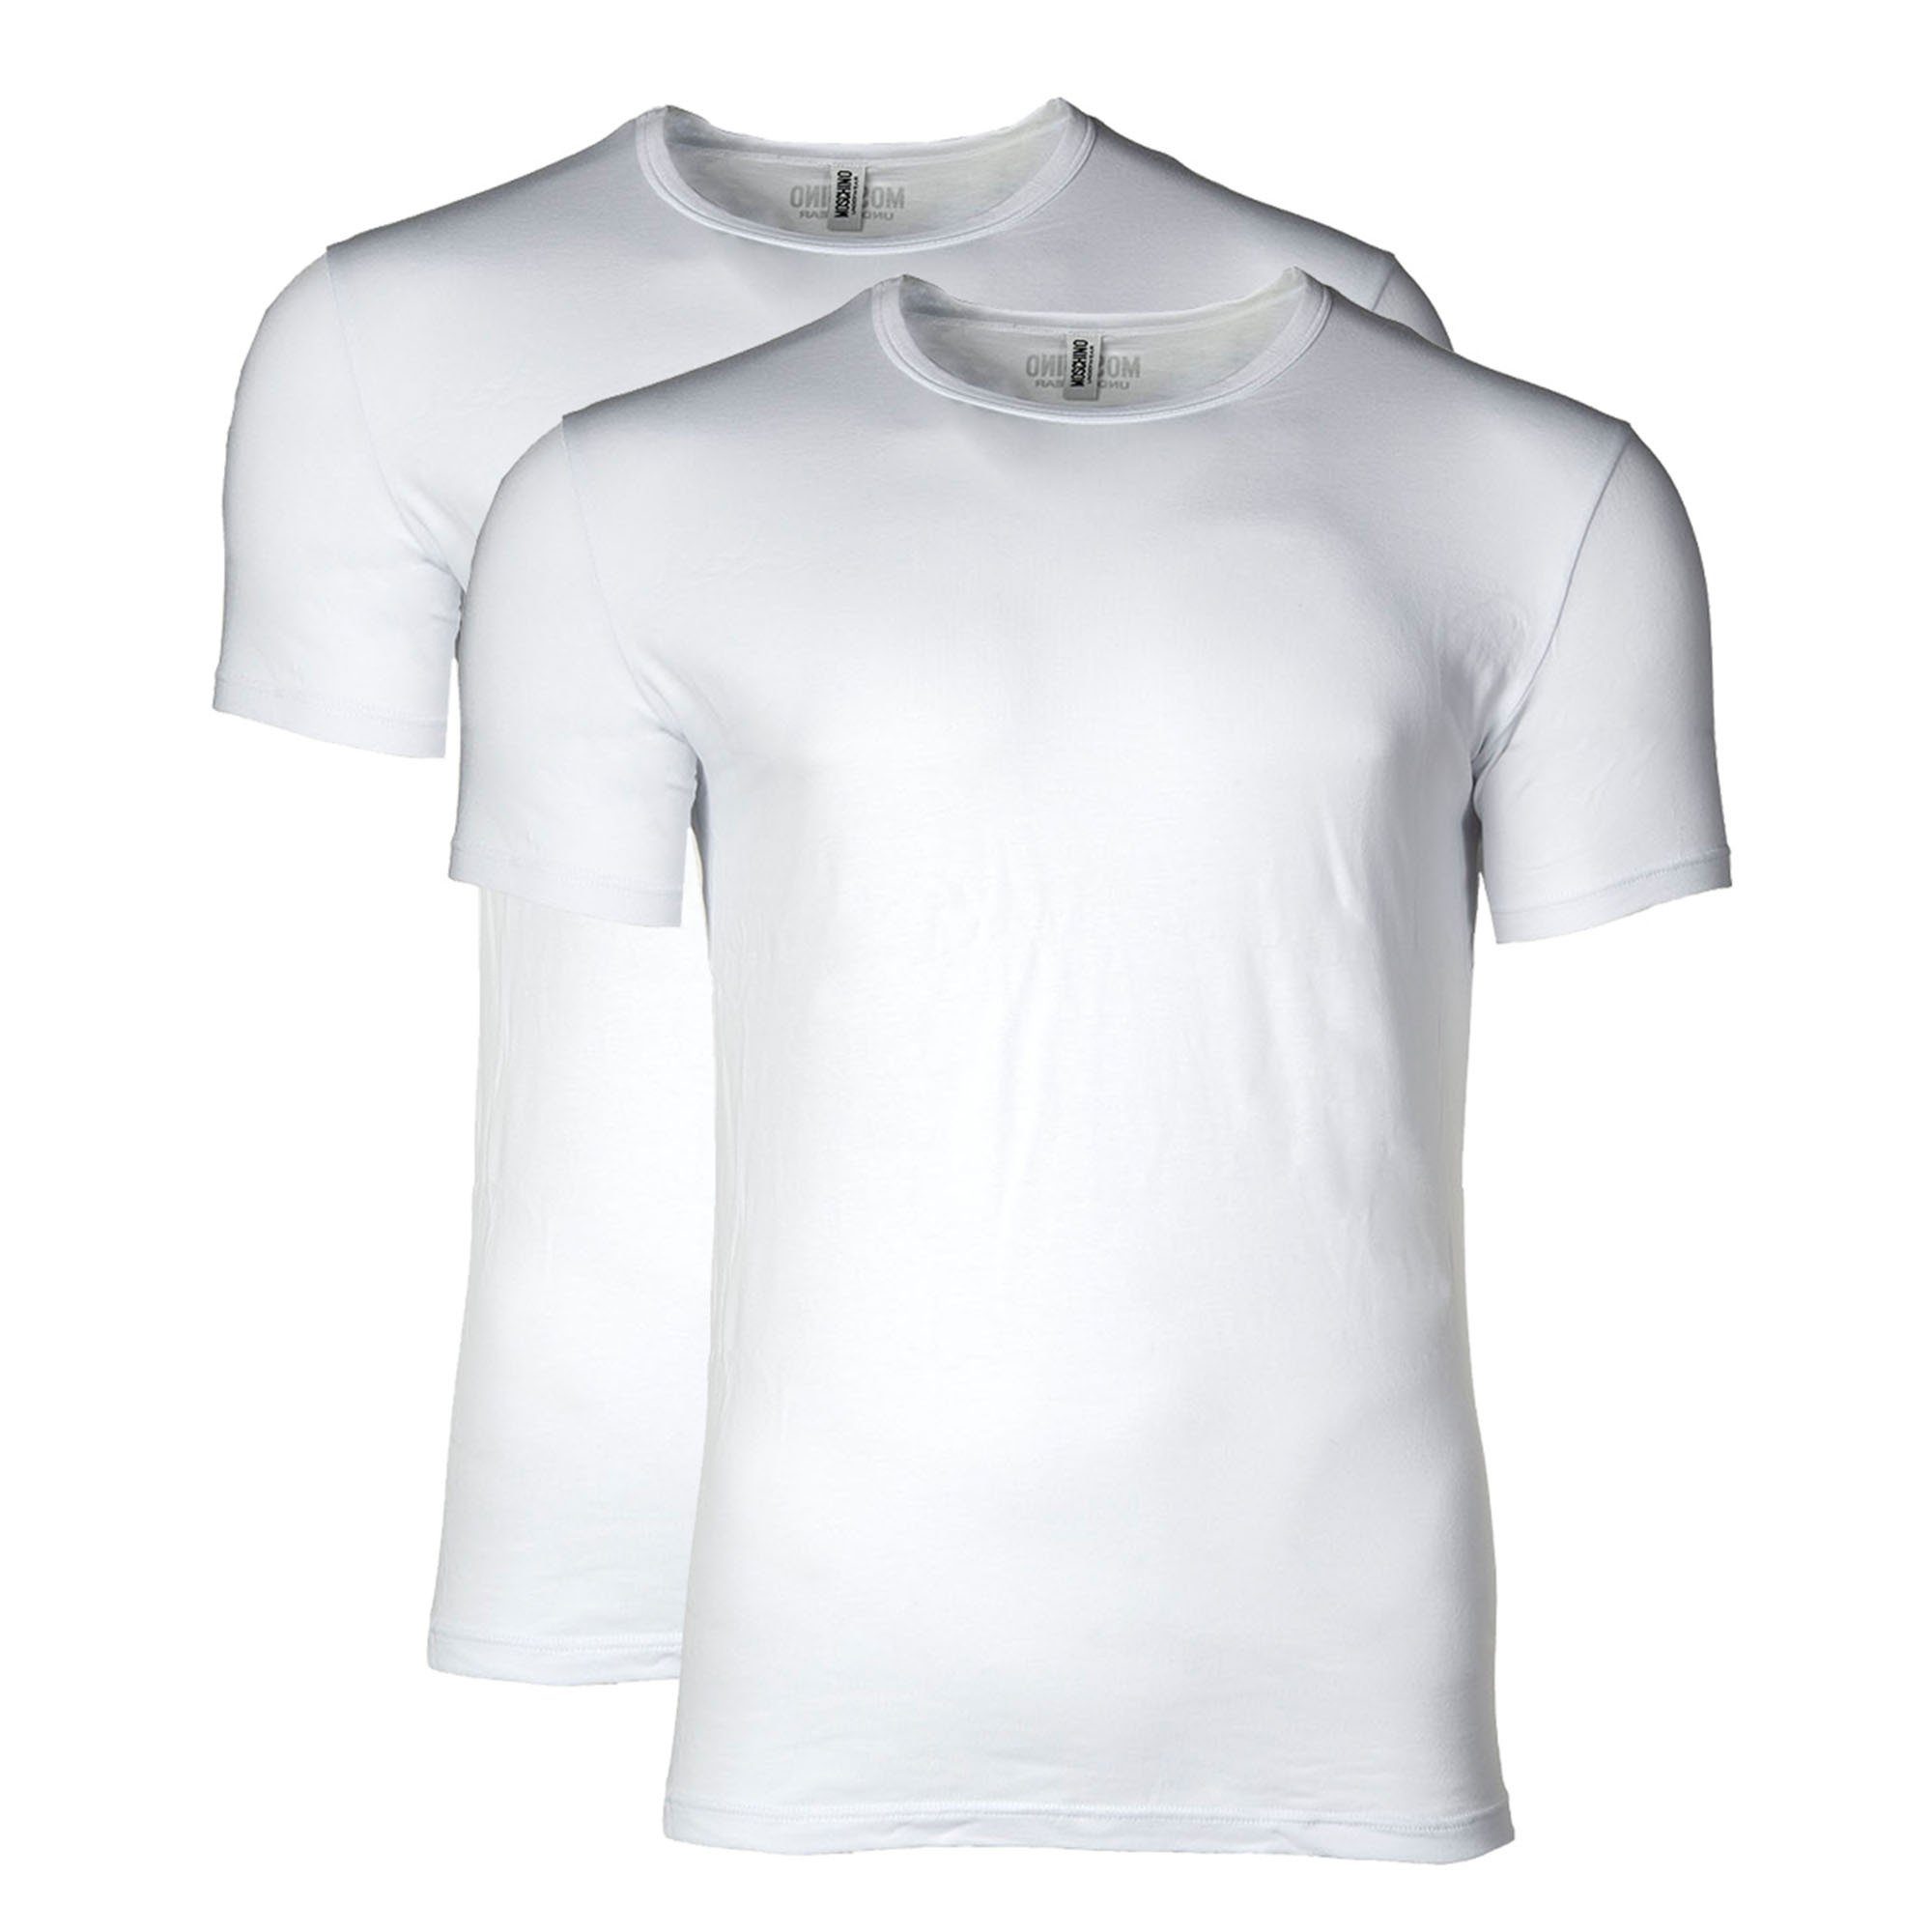 Moschino T-Shirt Herren T-Shirt 2er Pack - Crew Neck, Rundhals Weiß